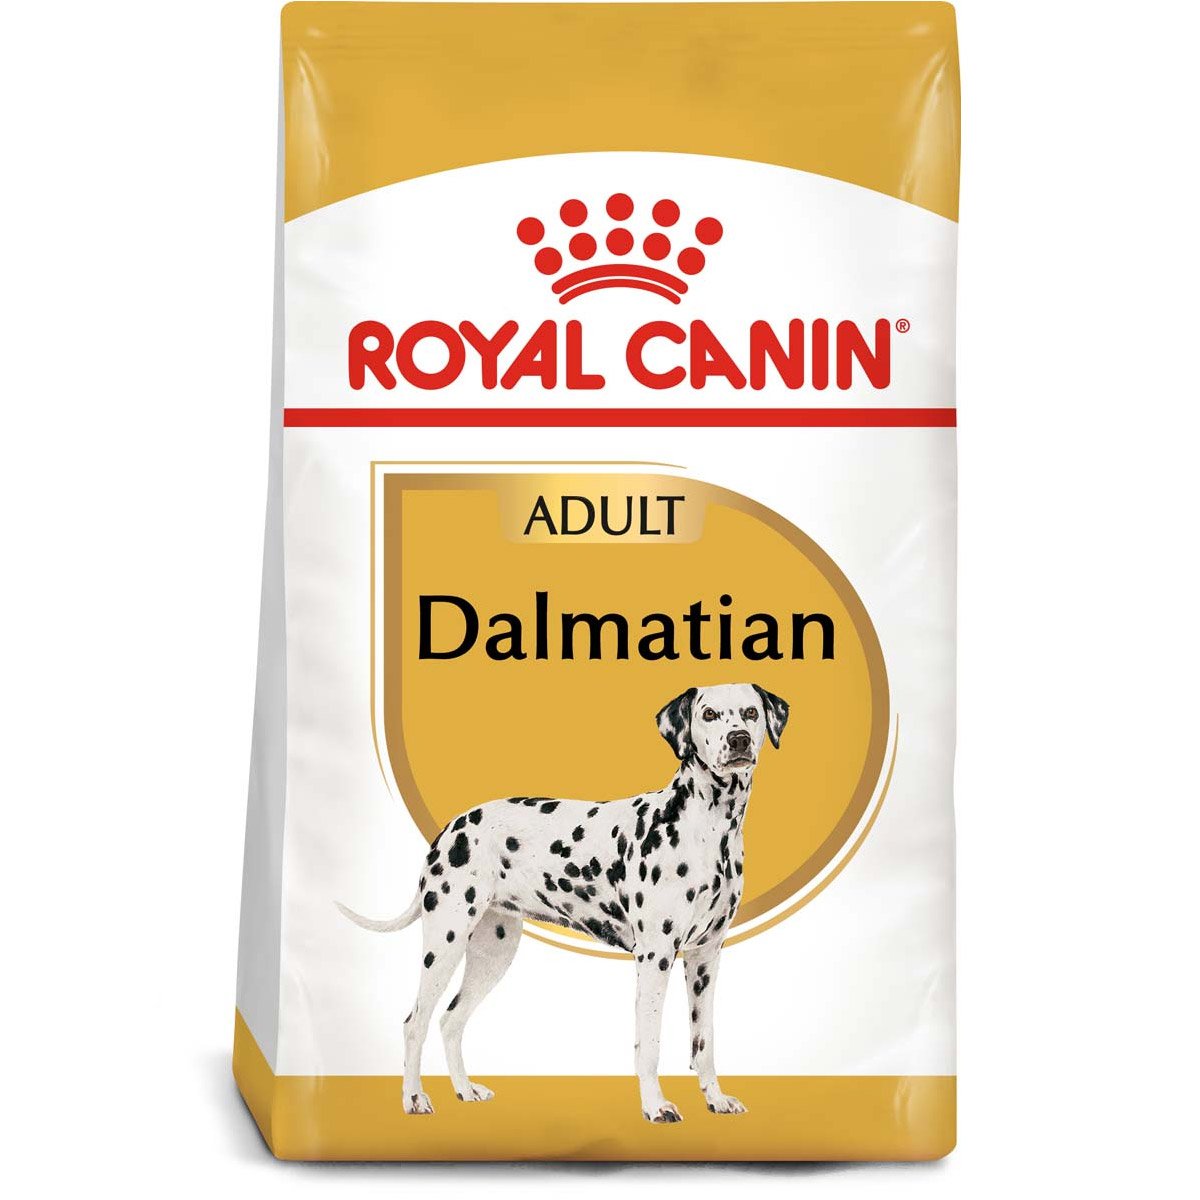 ROYAL CANIN Dalmatian Adult Hundefutter trocken für Dalmatiner 12kg